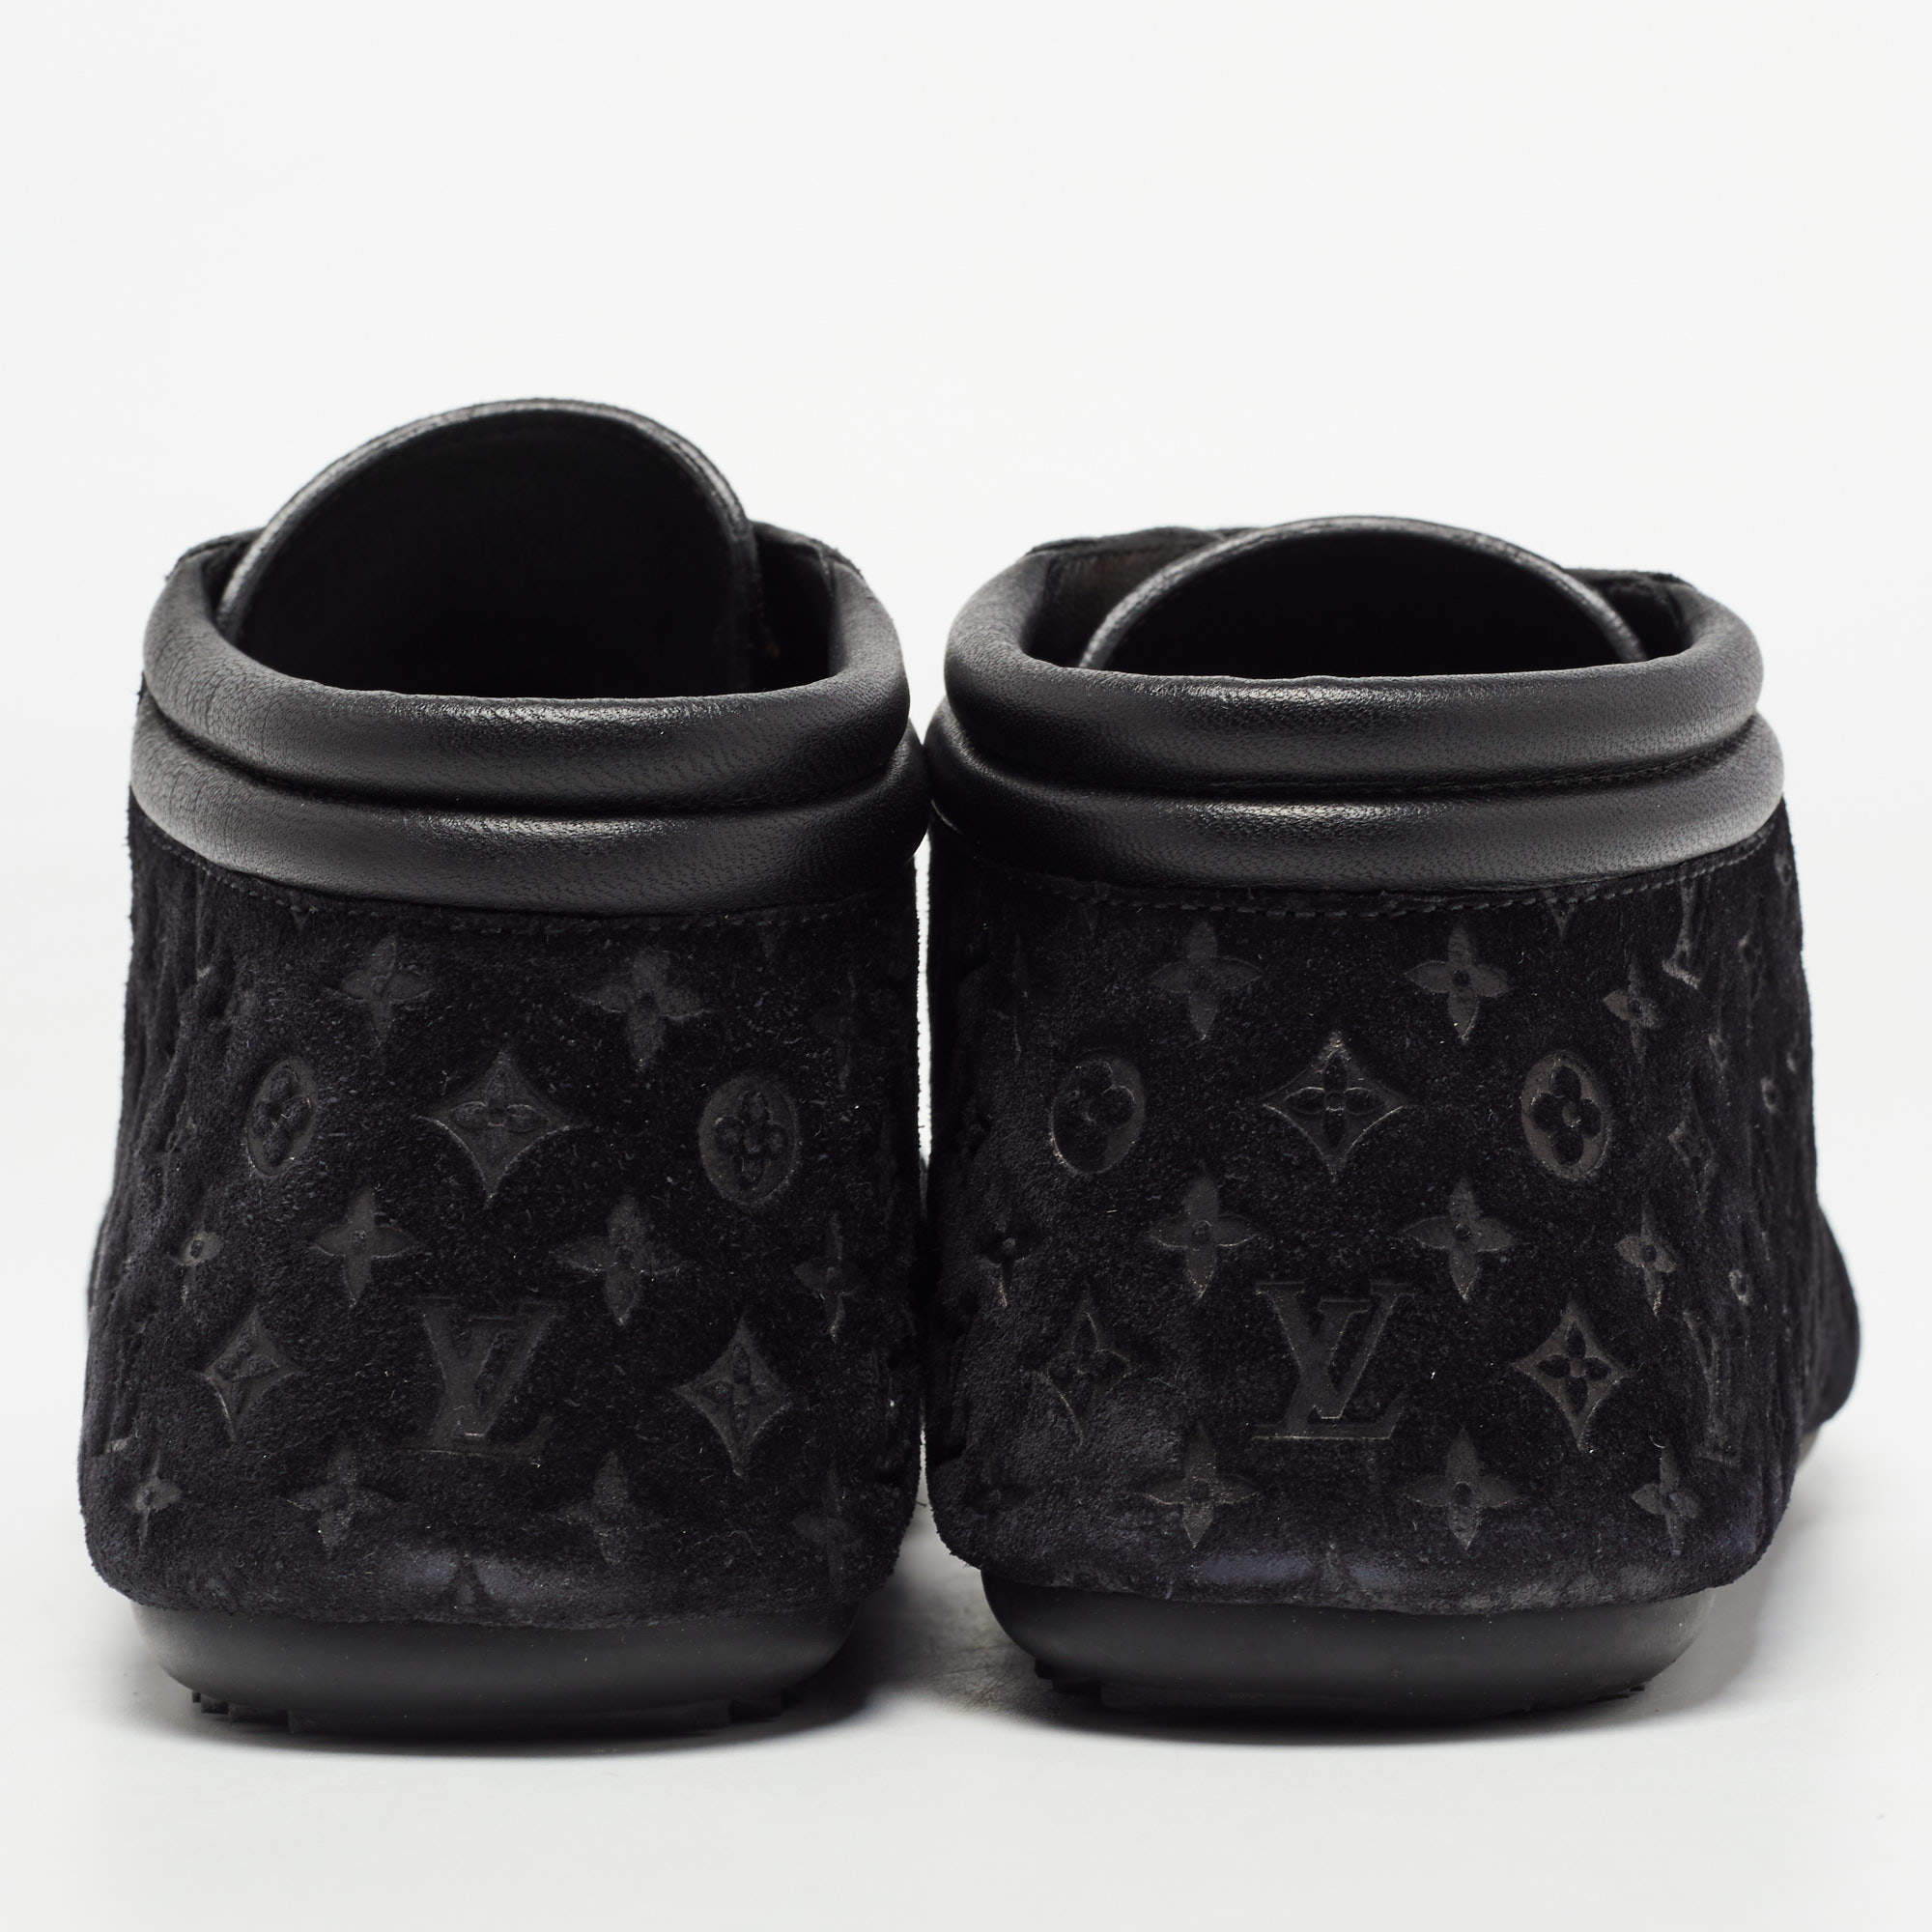 Louis Vuitton Black Monogram Suede Lace Up Sneakers Size 38 Louis Vuitton